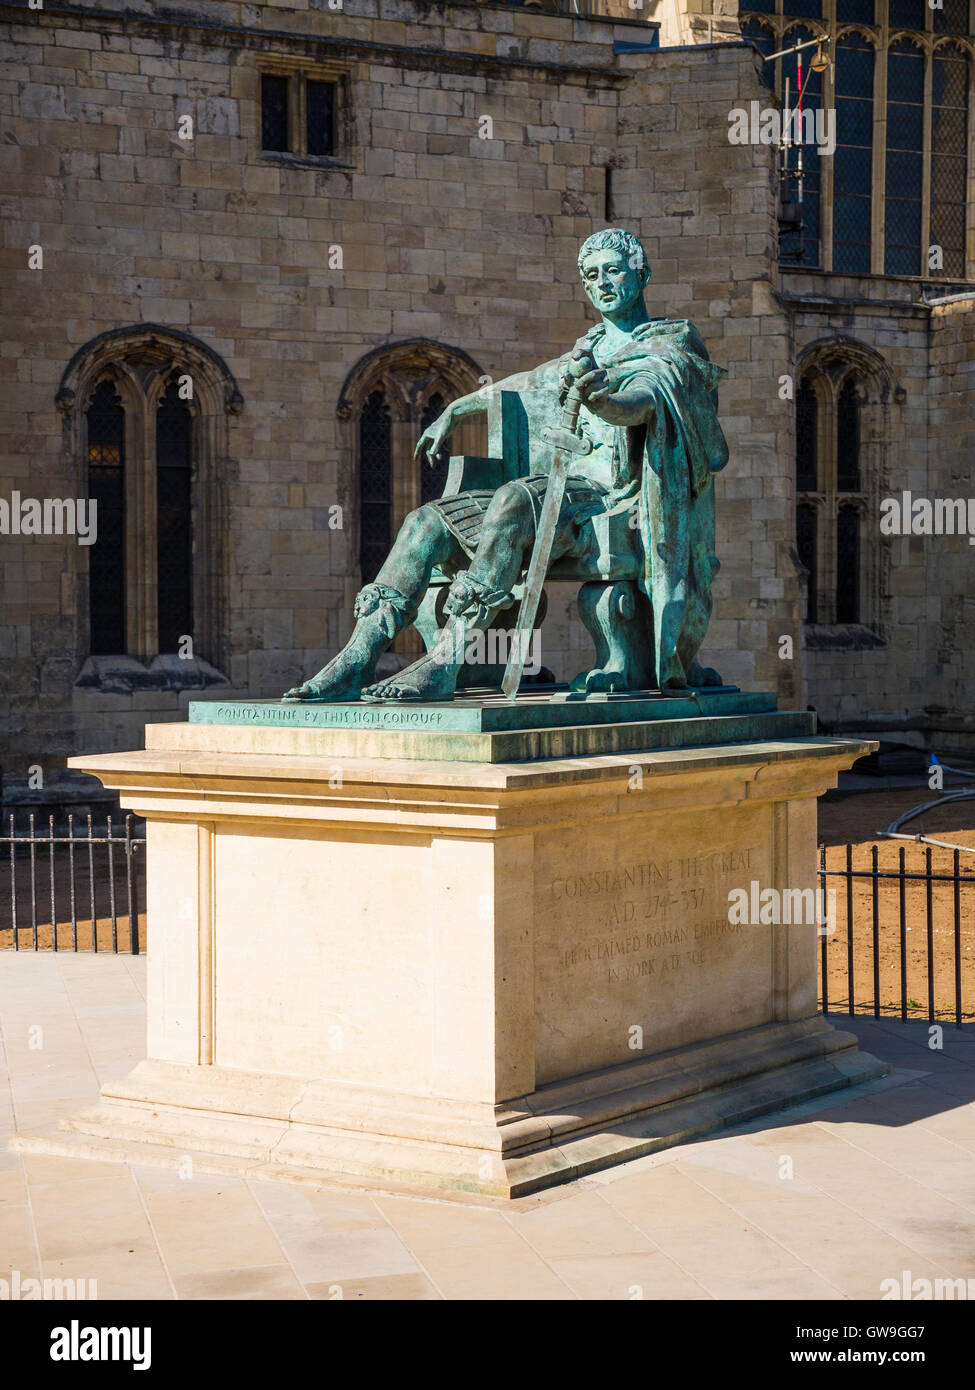 Statue de bronze de Constantin le Grand, le premier empereur romain chrétien, à côté de la cathédrale de York, York, Angleterre Banque D'Images